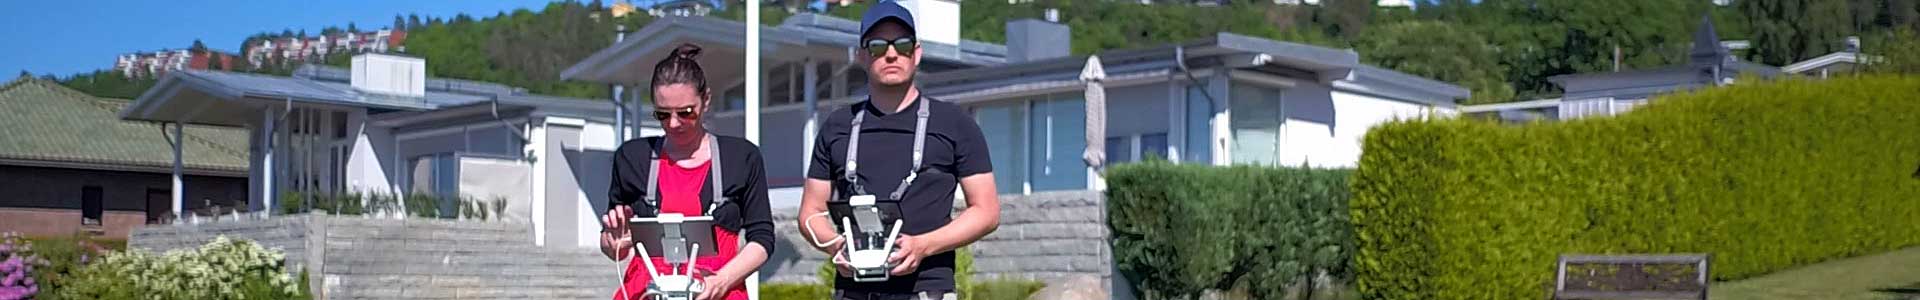 Reel Media Nordic - drone filming